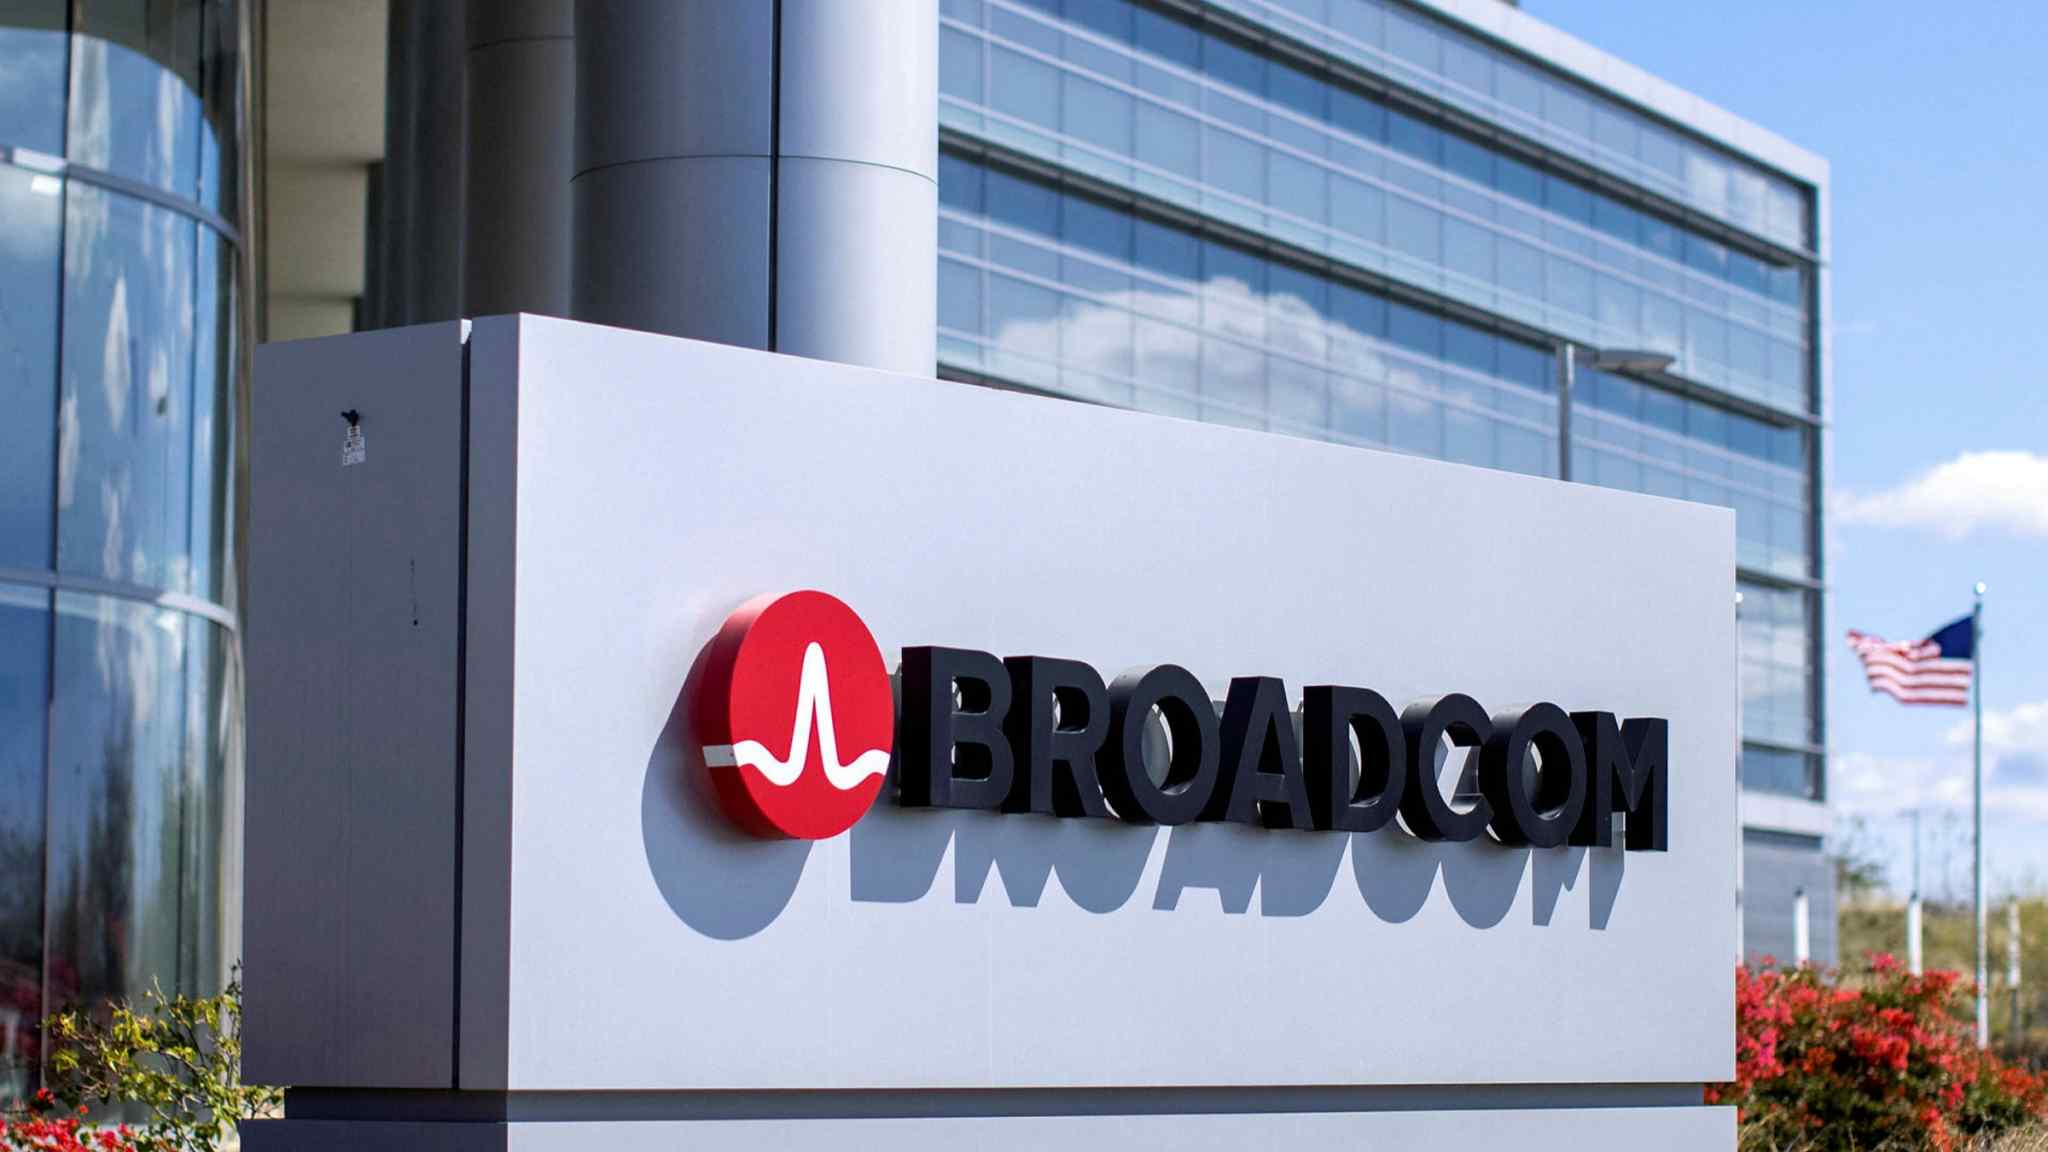 Broadcom broadens tech with VMware deal